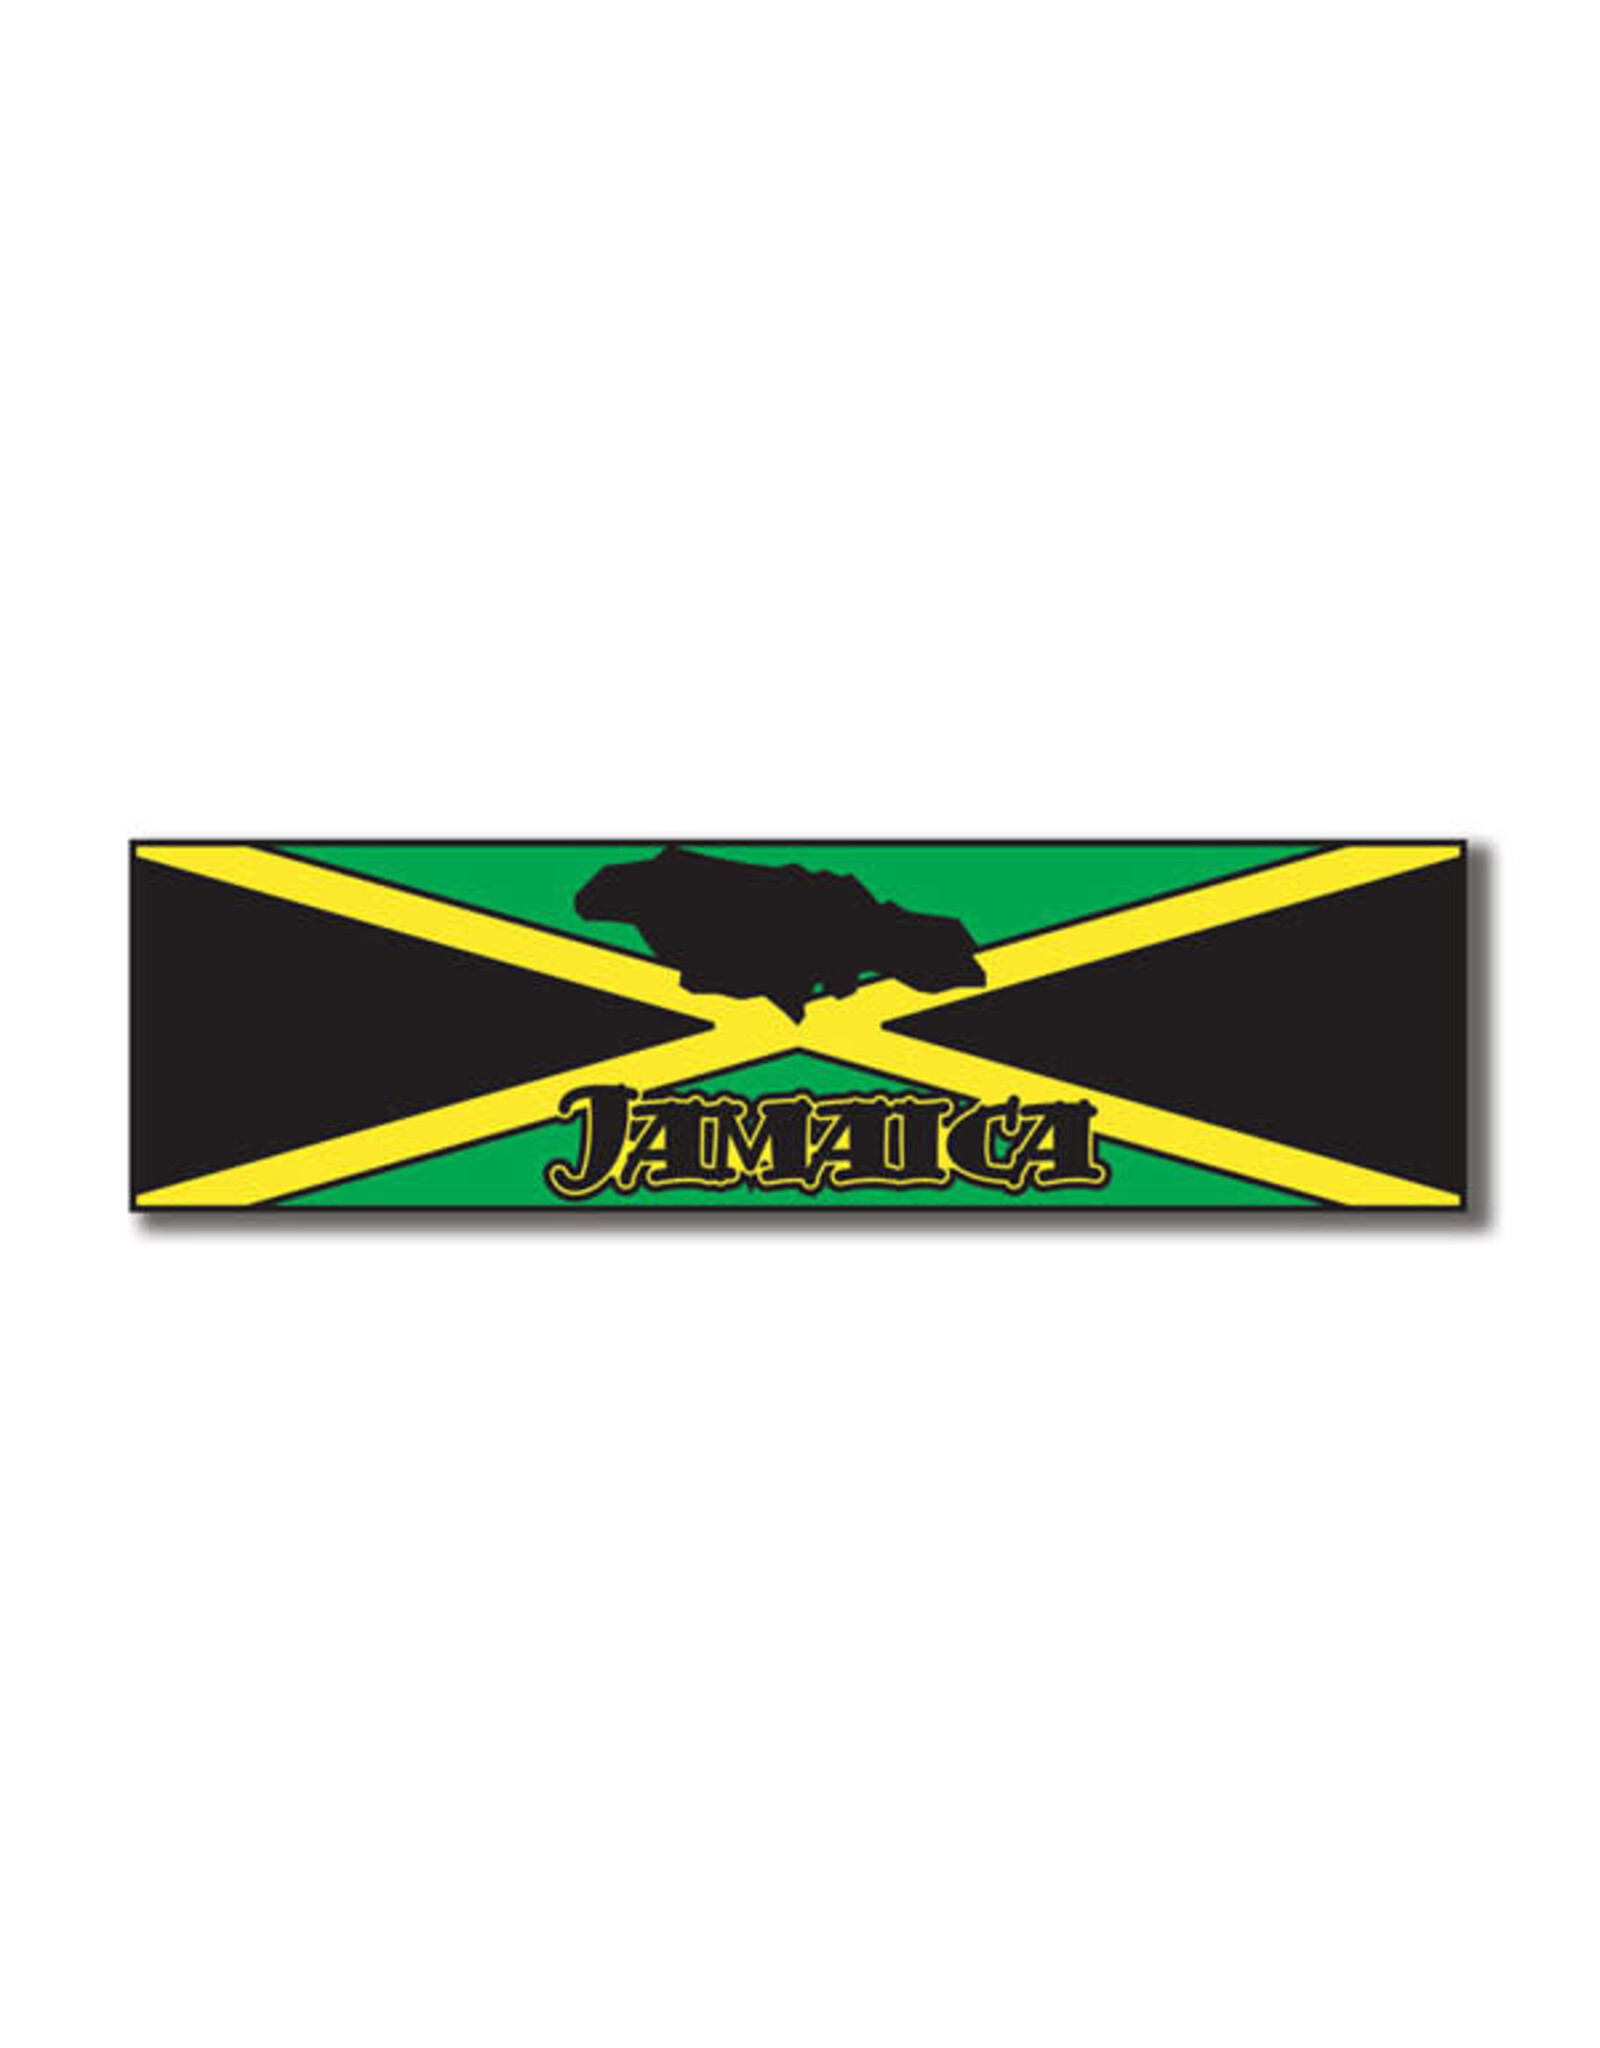 Jamaica banner